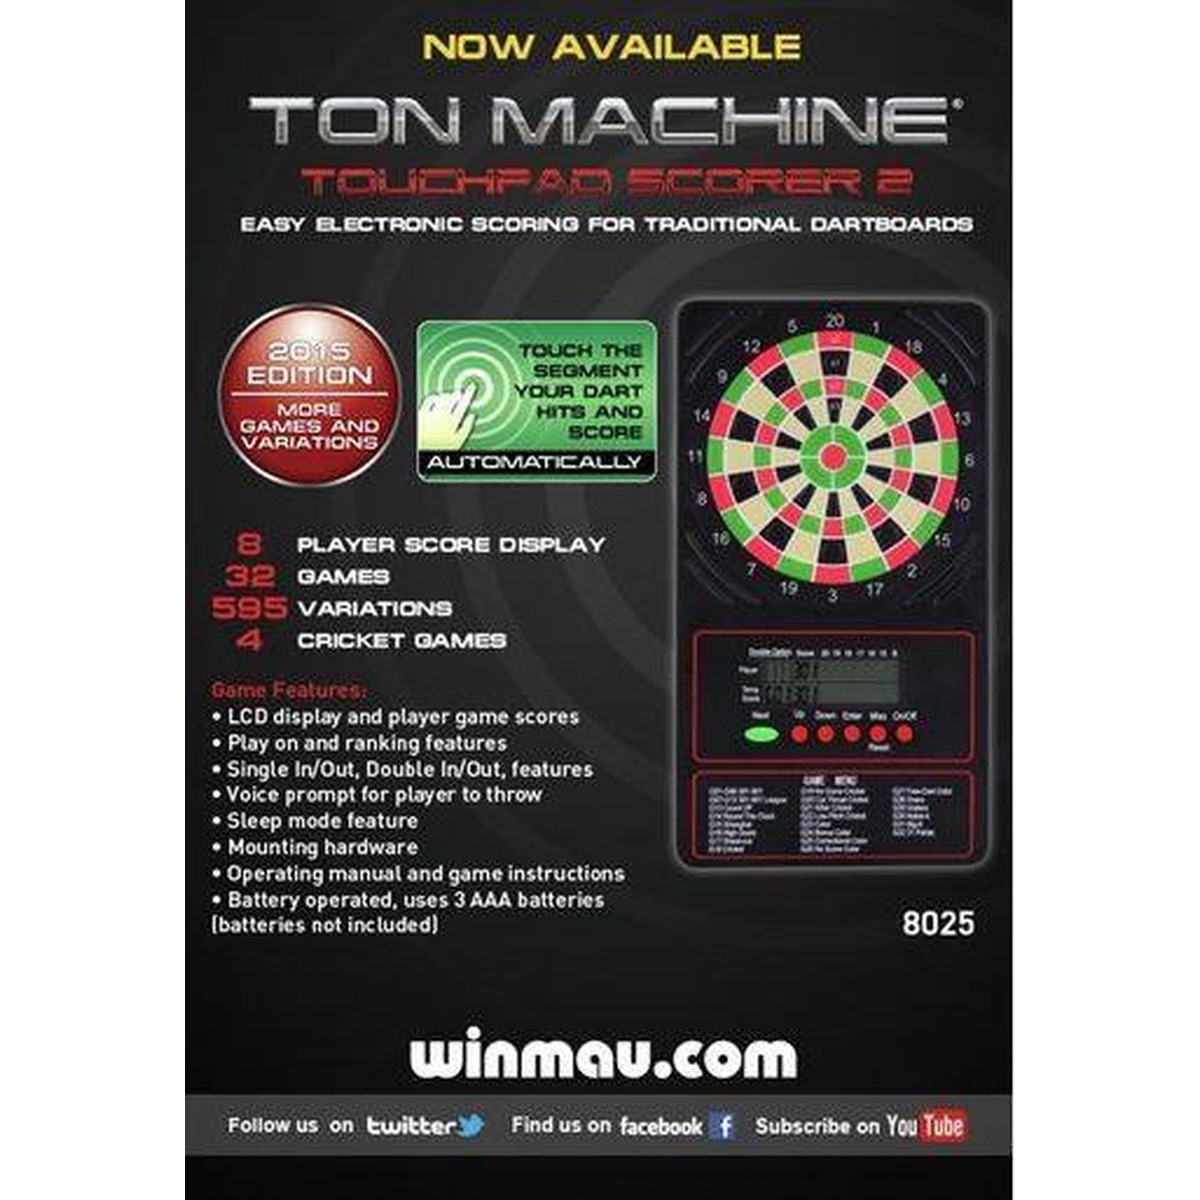 Winmau Ton Machine touchpad Scorer 2 